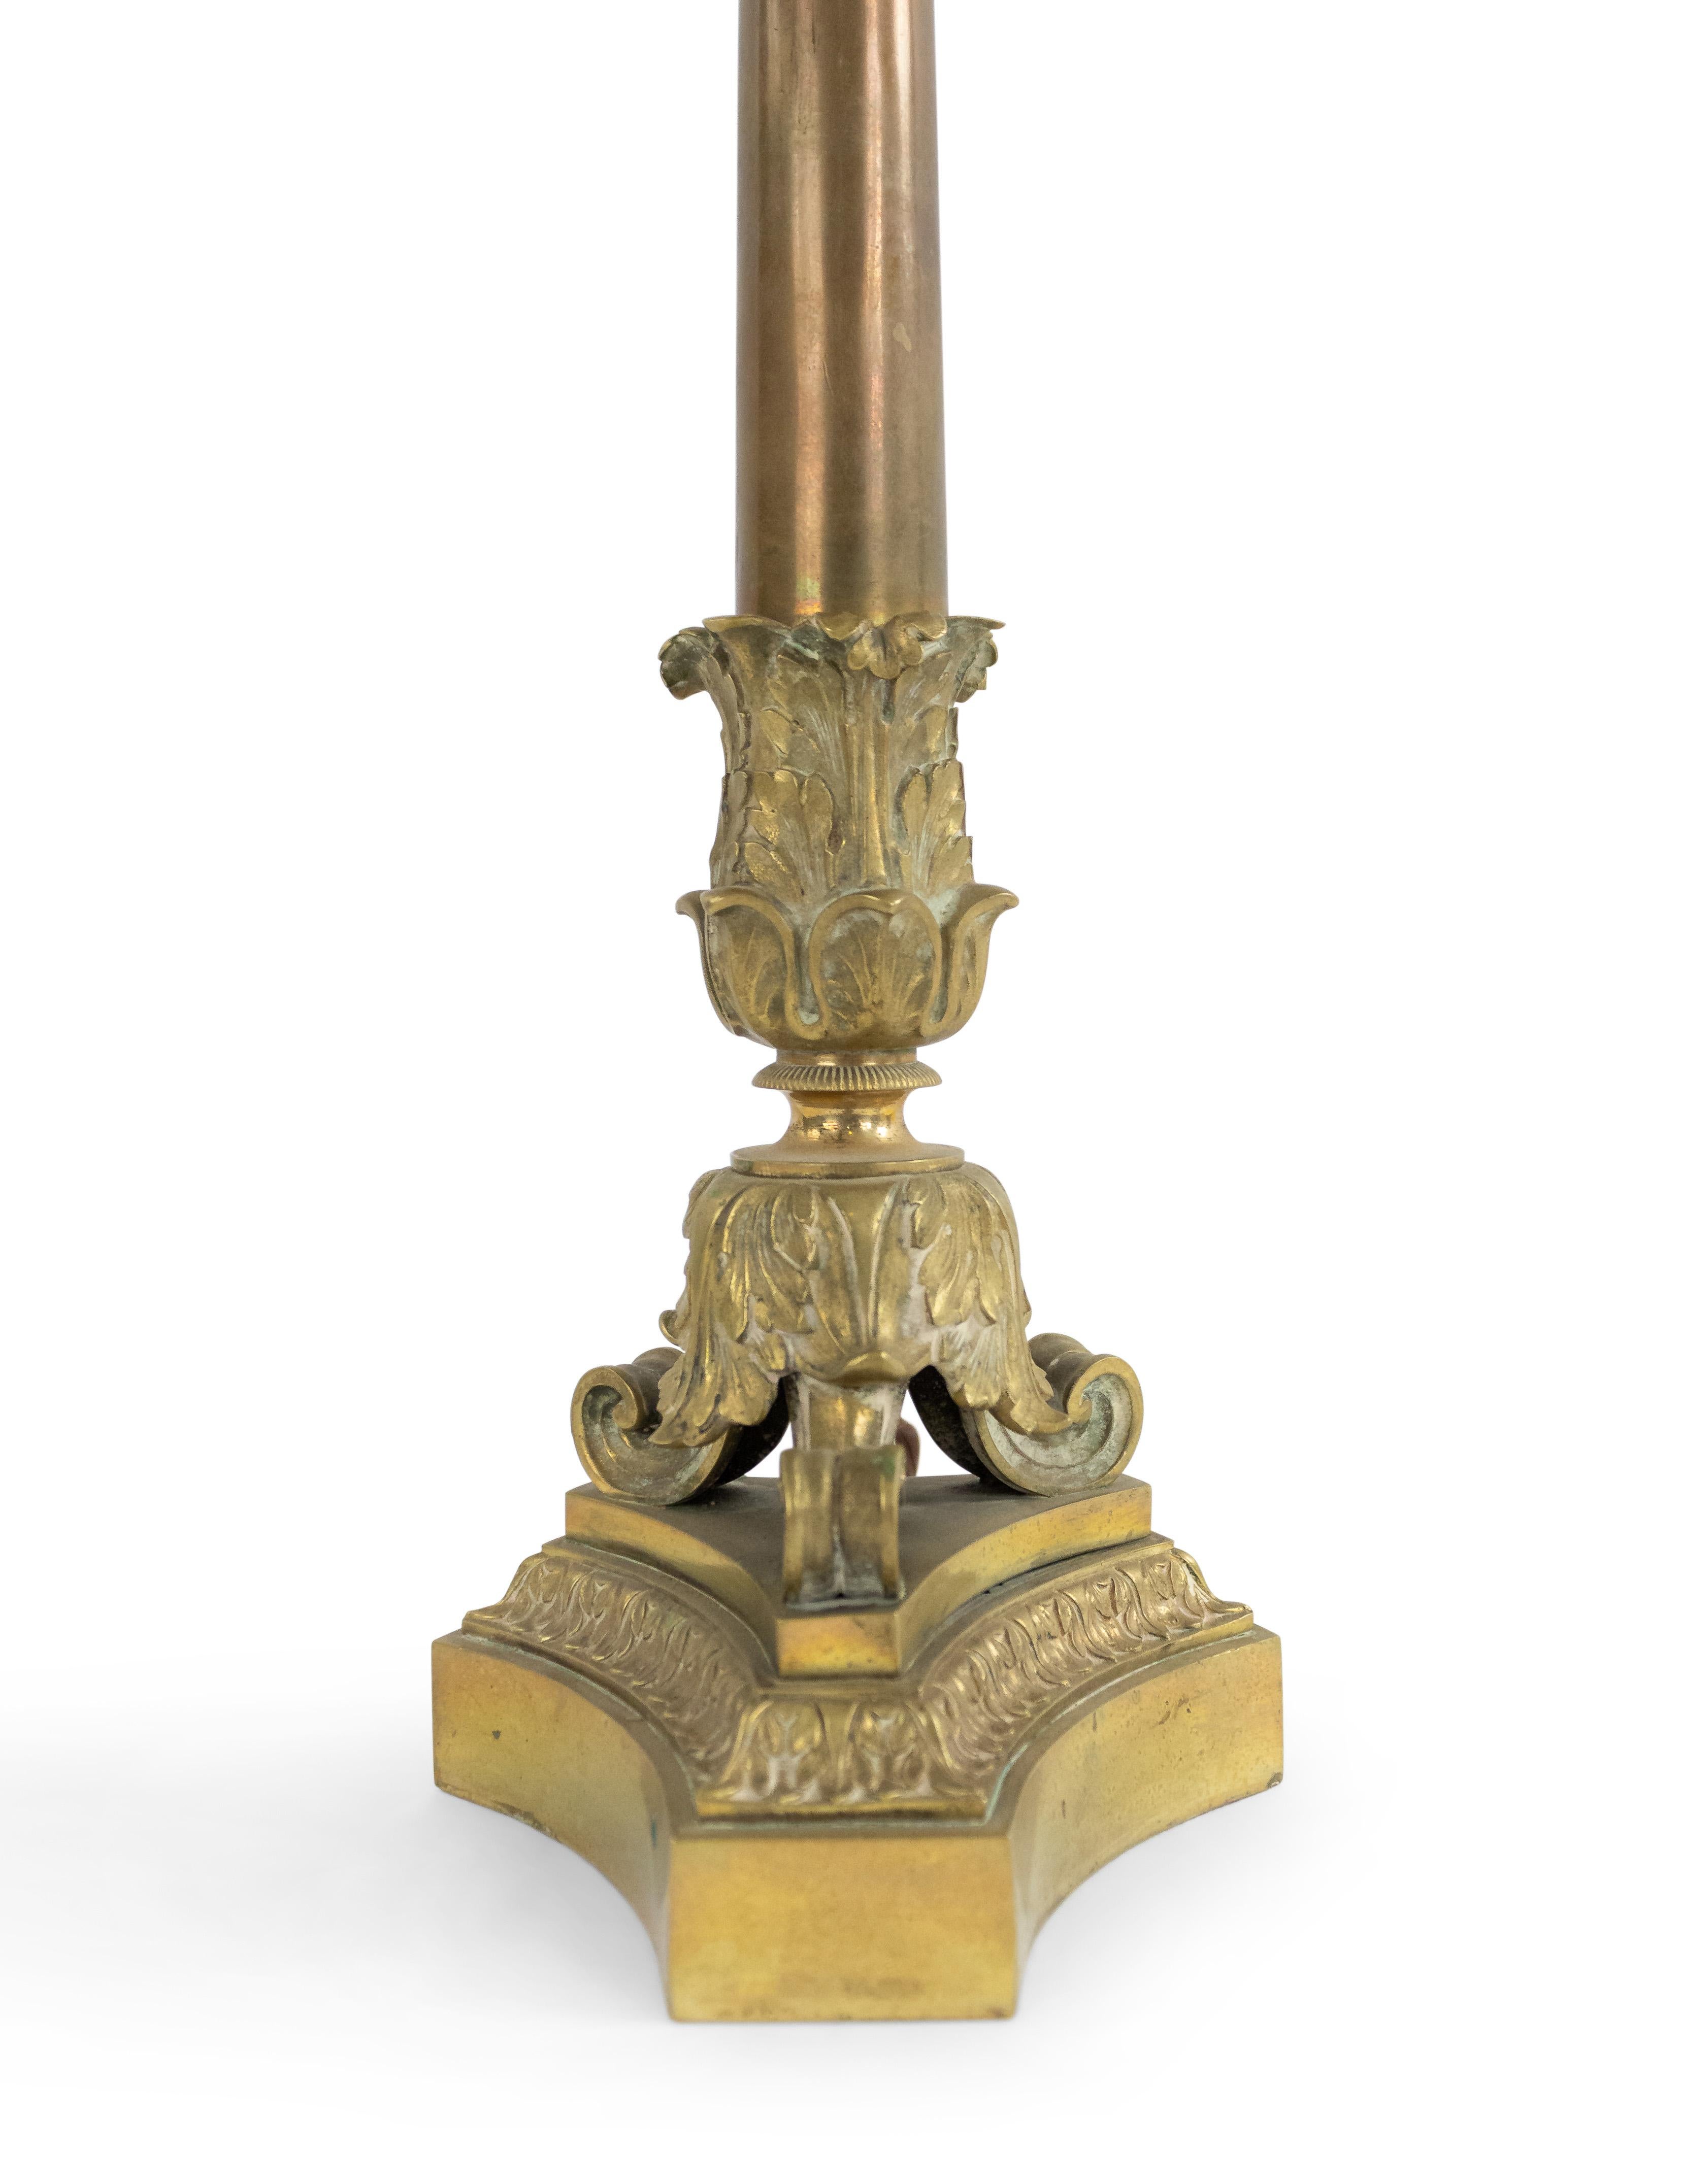 Chandelier français de style Louis XVI (19ème siècle) à 3 bras avec une colonne sur une base triangulaire avec des pieds griffes, maintenant câblé comme une lampe.